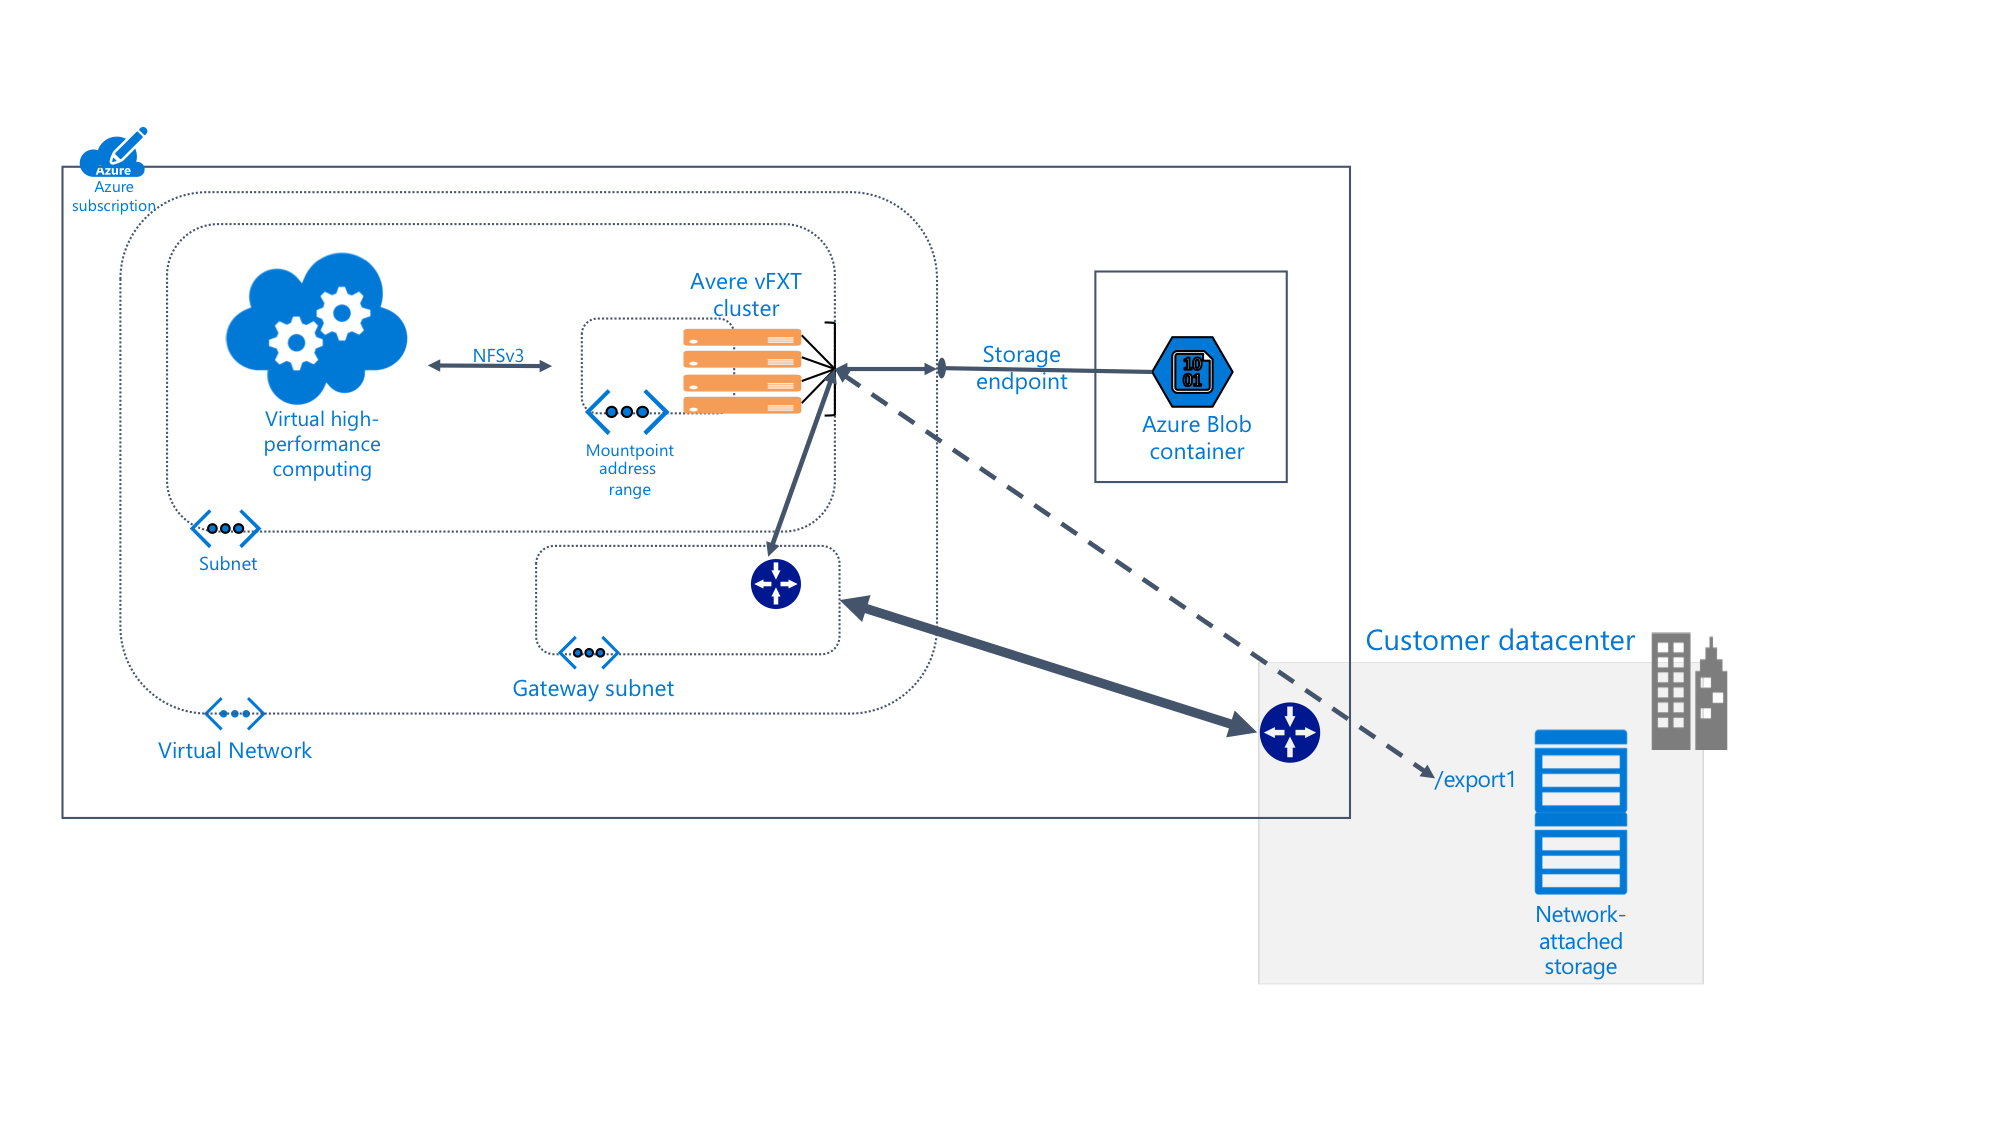 diagramme montrant les détails du système Avere vFXT à l’intérieur d’un abonnement Azure connecté au stockage blob et à un centre de données local